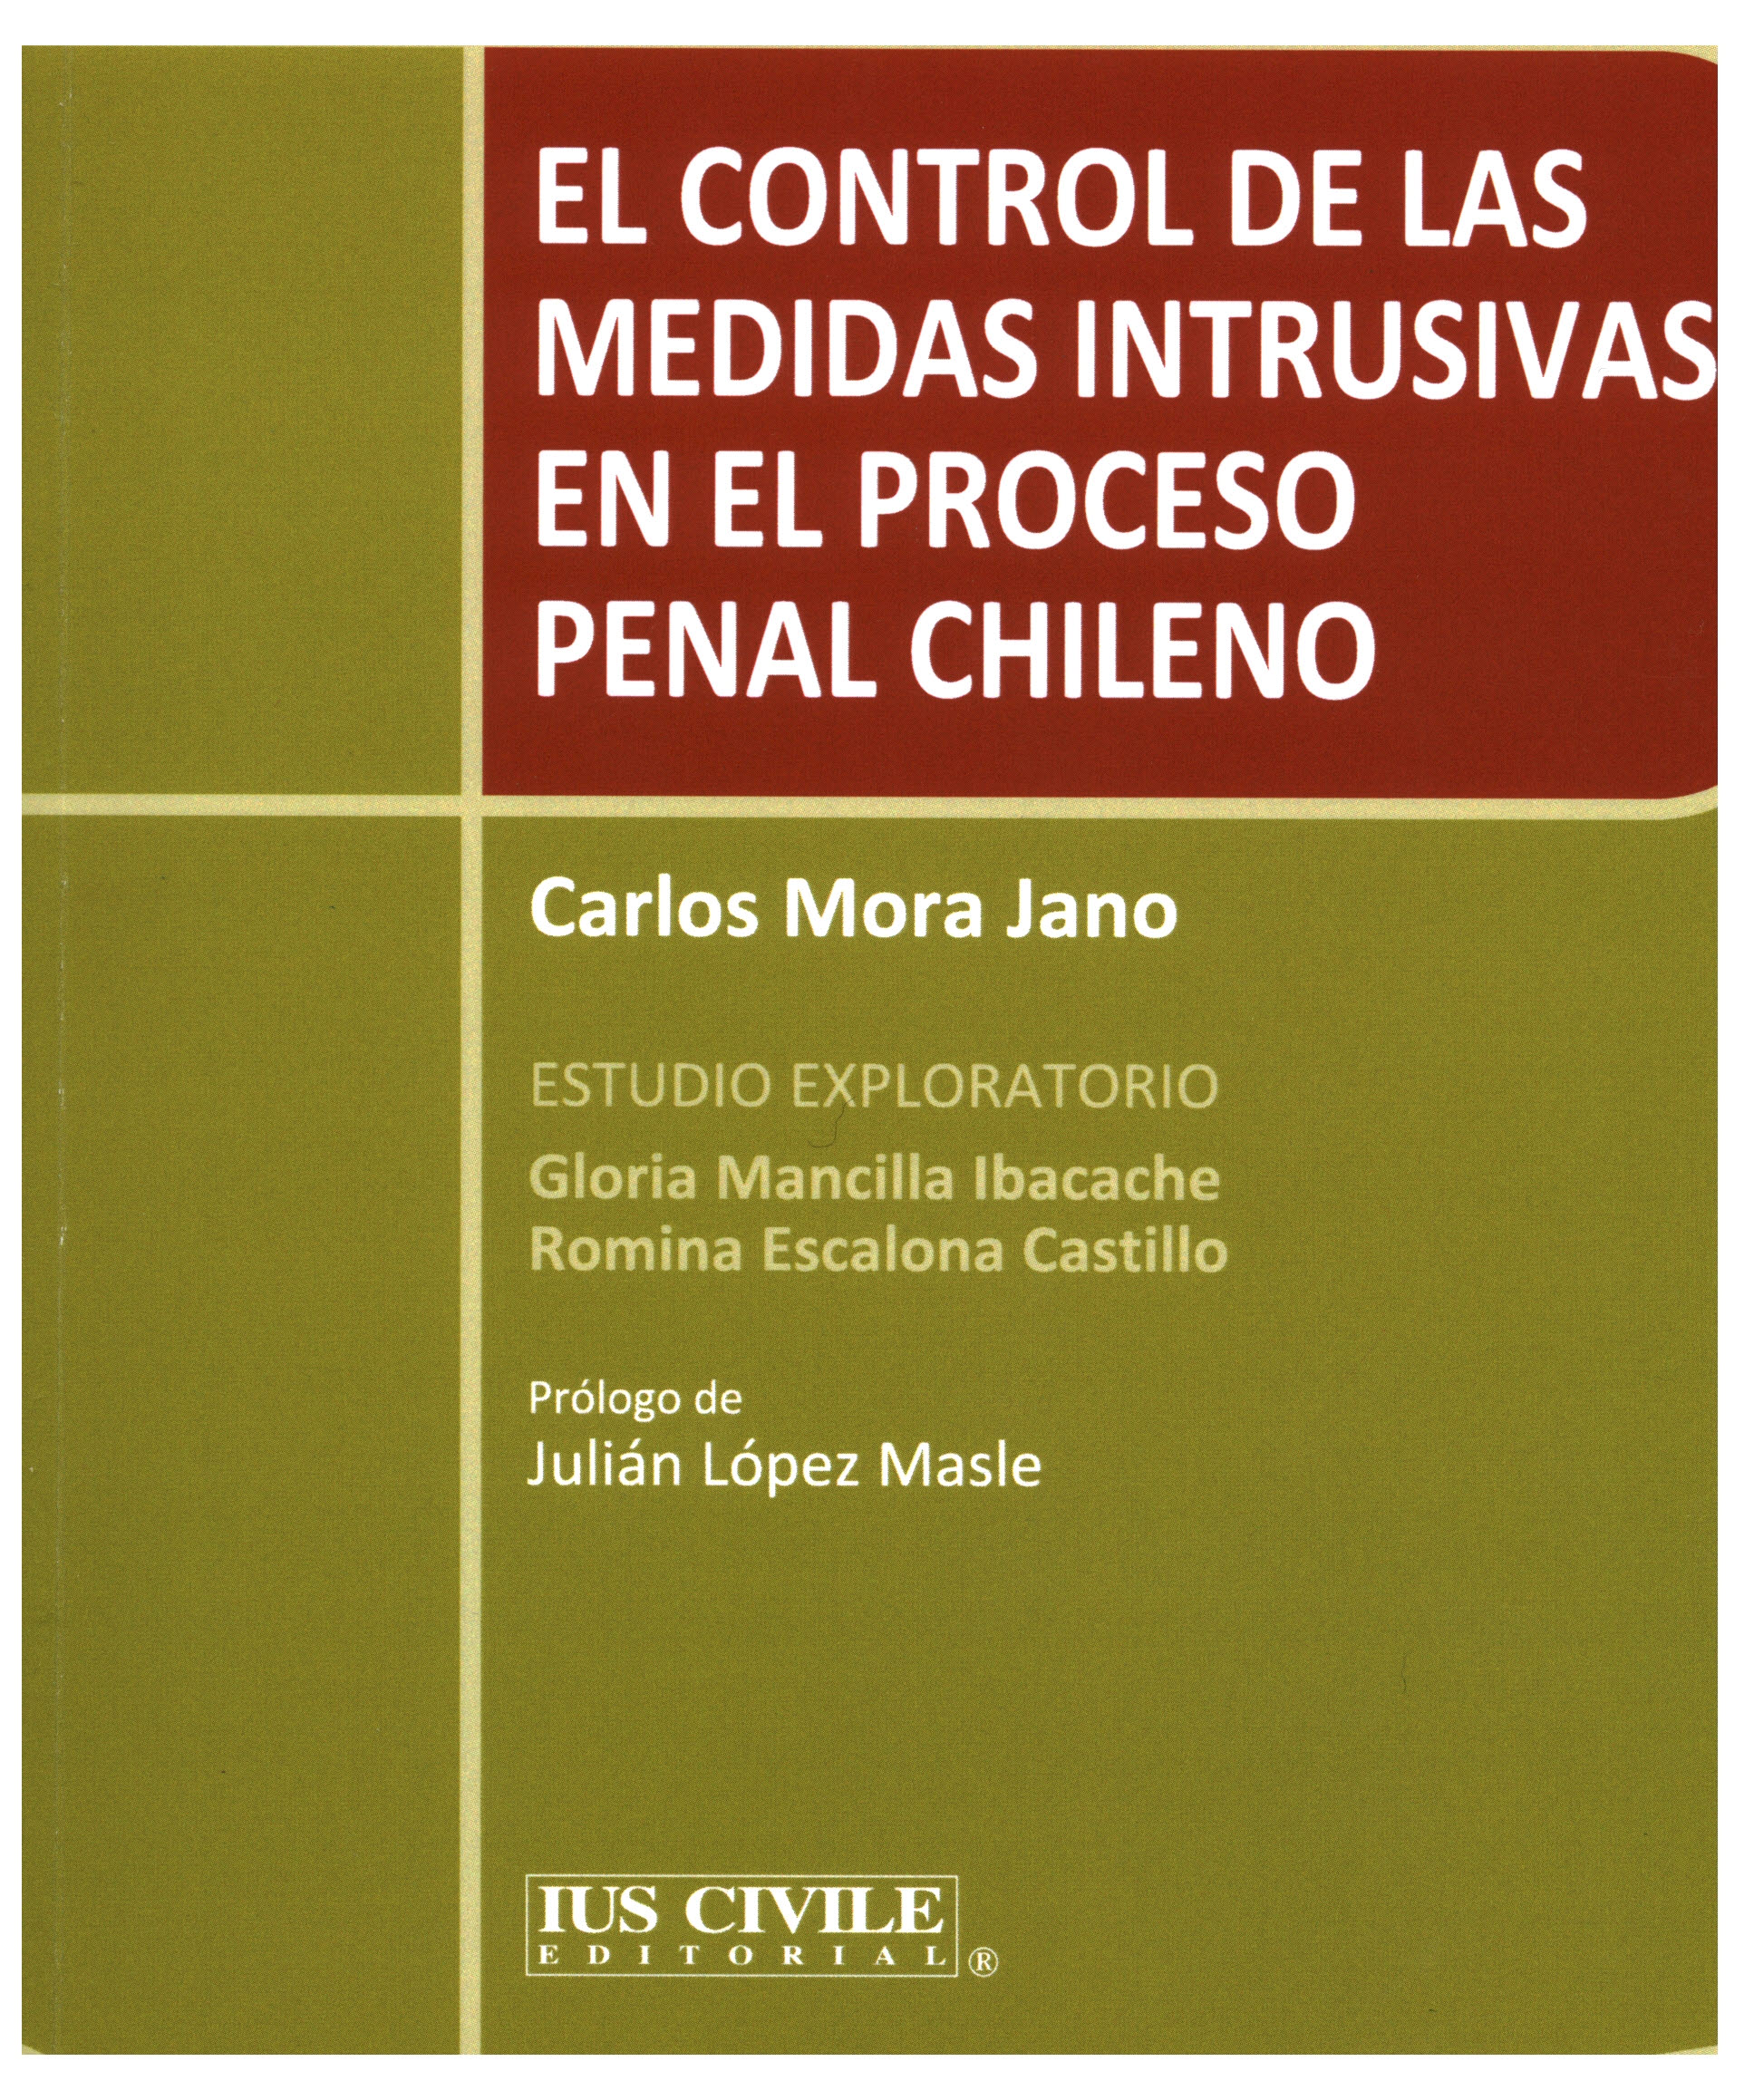 El control de las medidas intrusivas en el proceso penal chileno